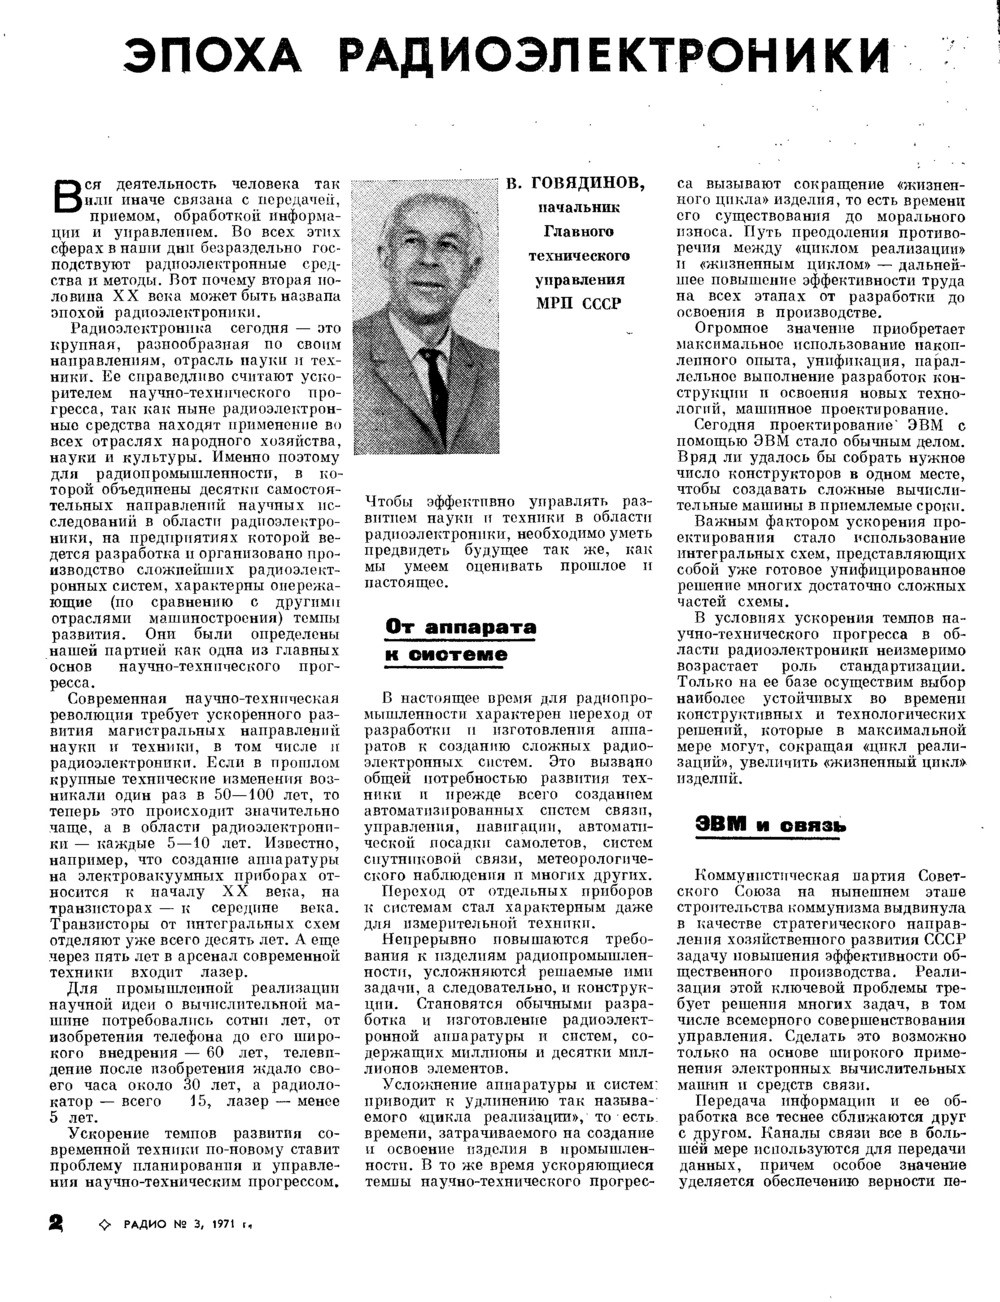 Кибернетика в СССР: от лженауки до панацеи - 8